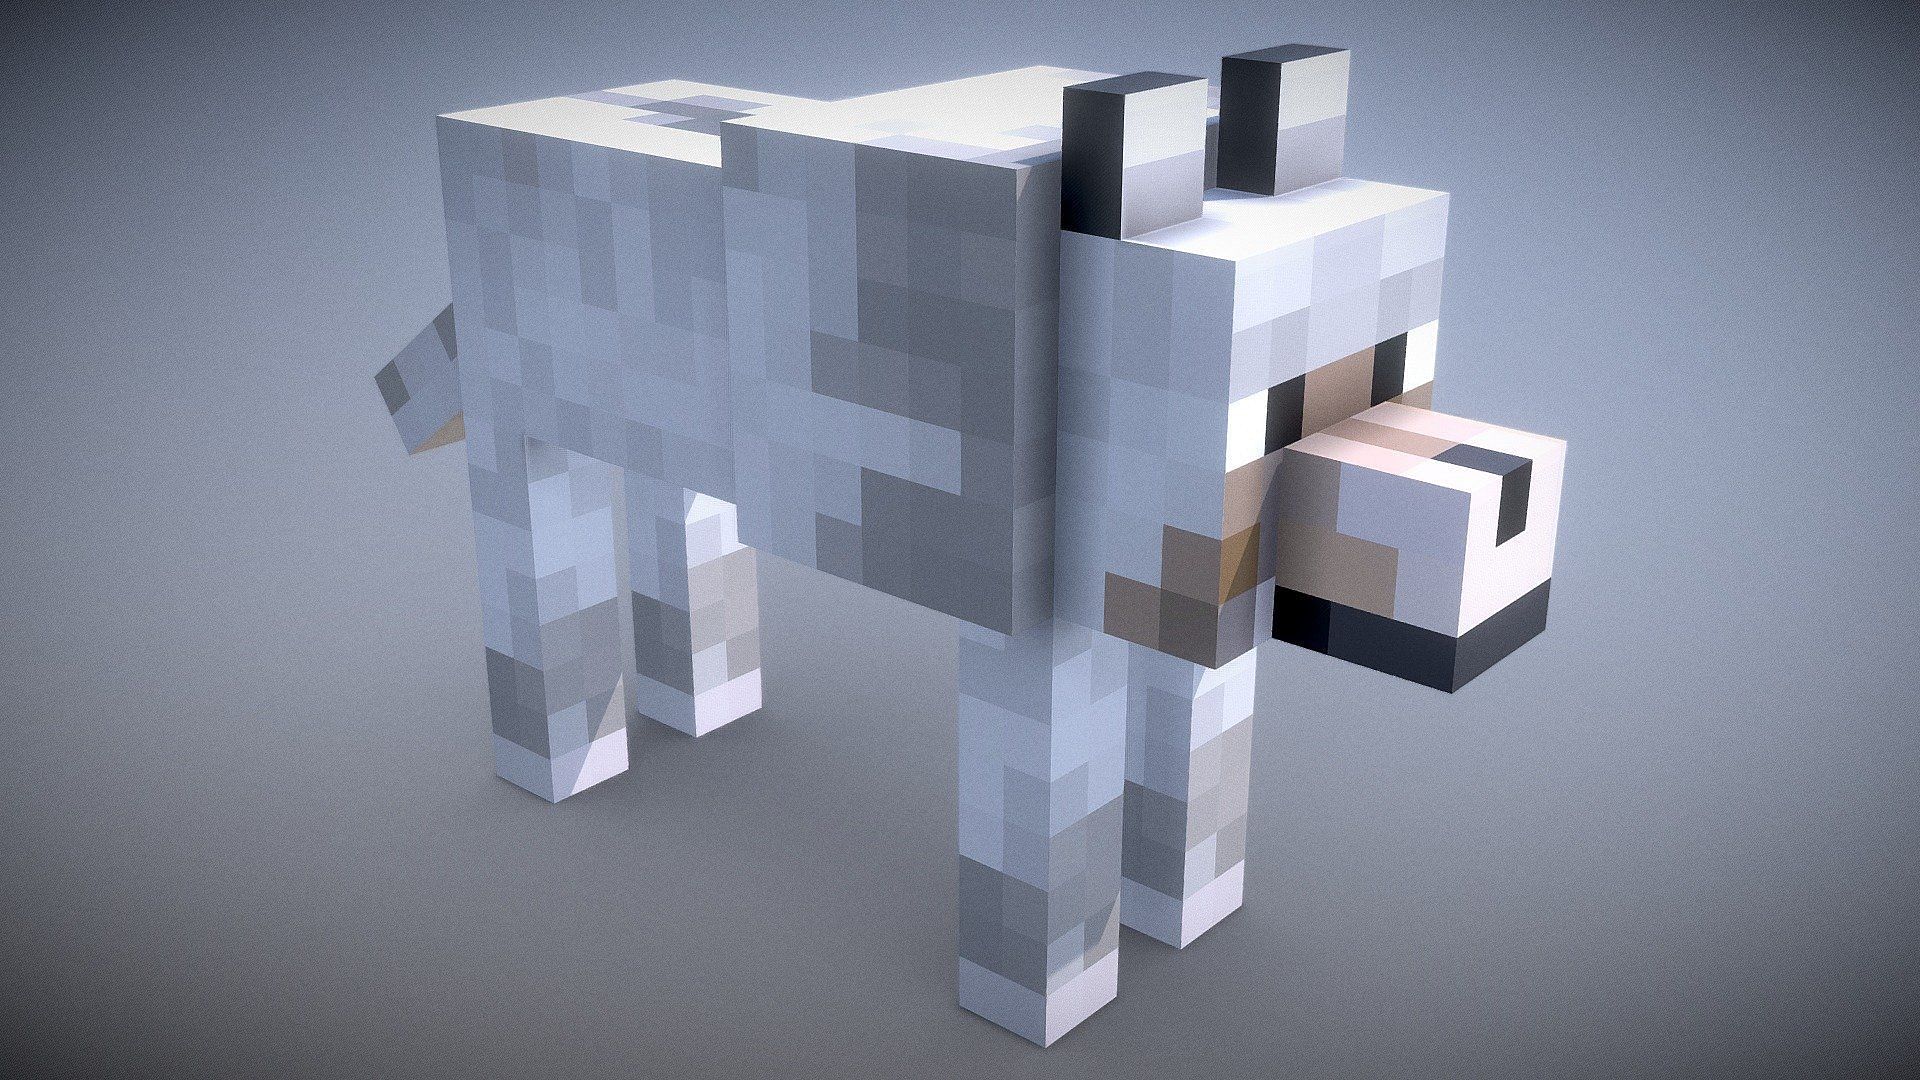 A wolf in Minecraft (Image via Minecraft)